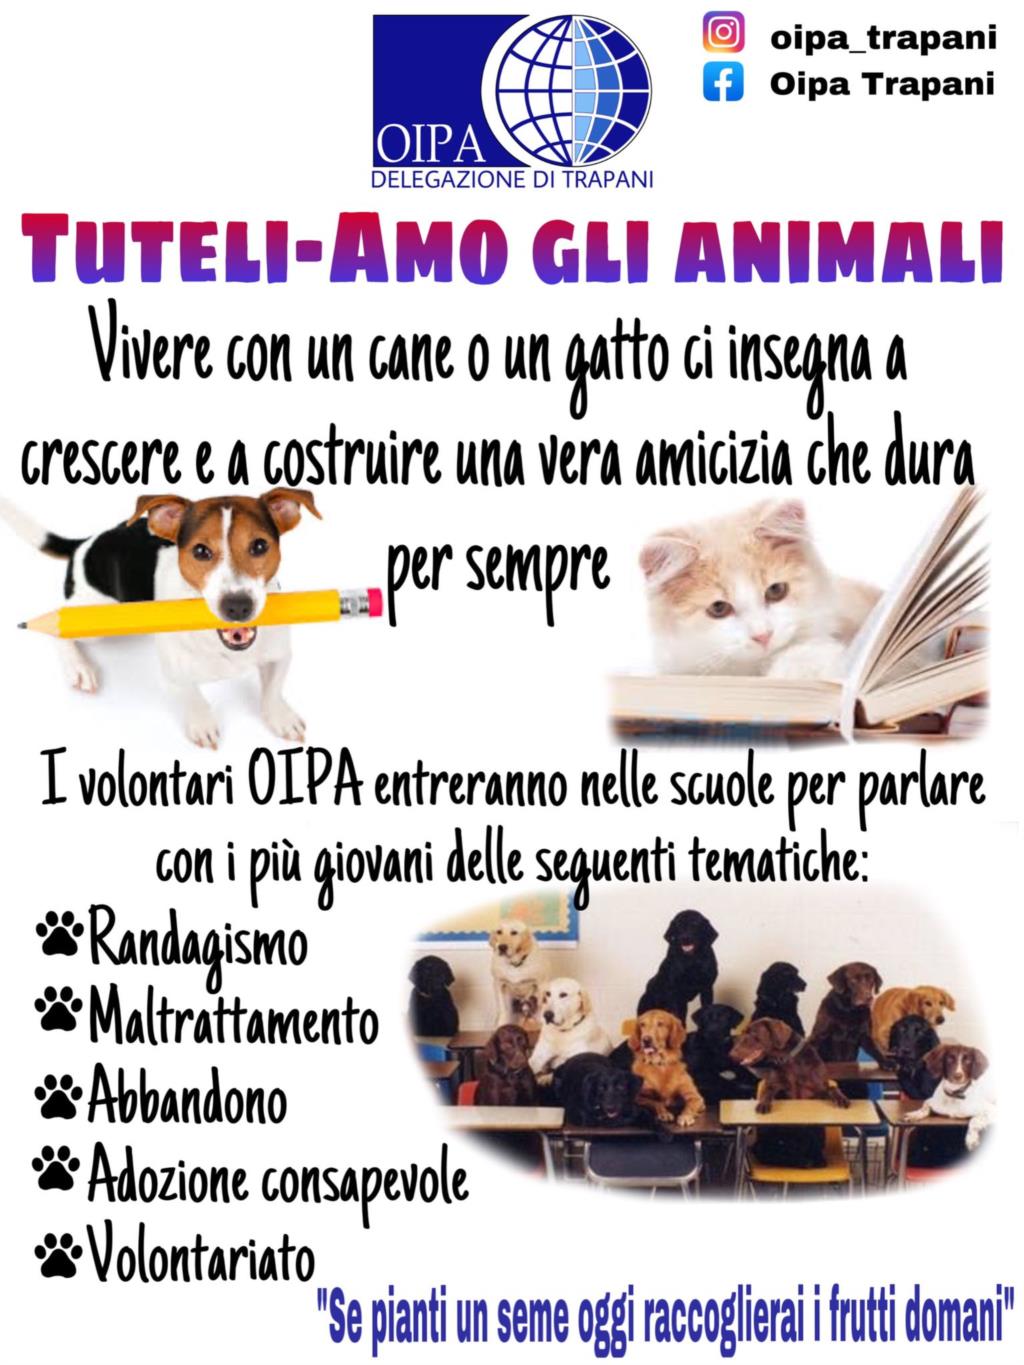 Trapani, l'Oipa entra nelle scuole: 'Gli animali vanno amati'